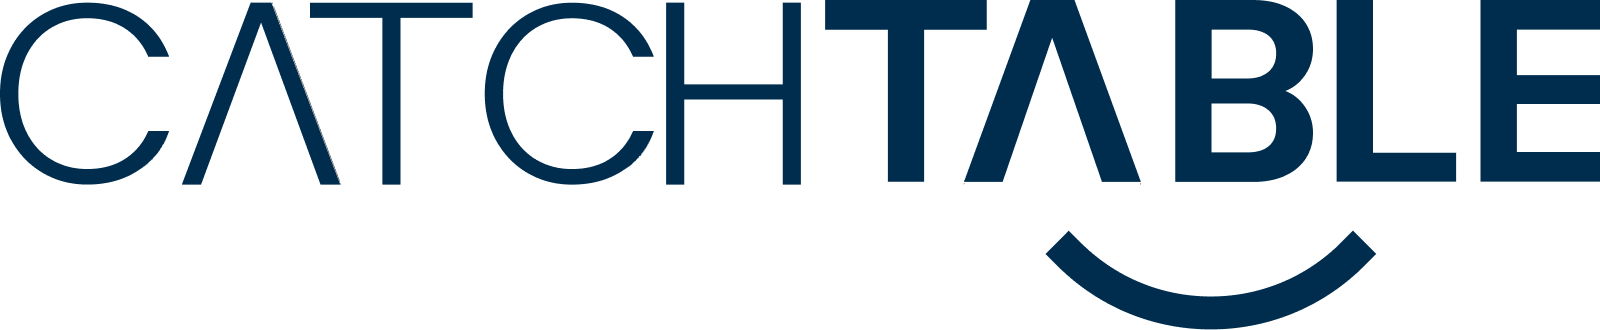 catchtable logo